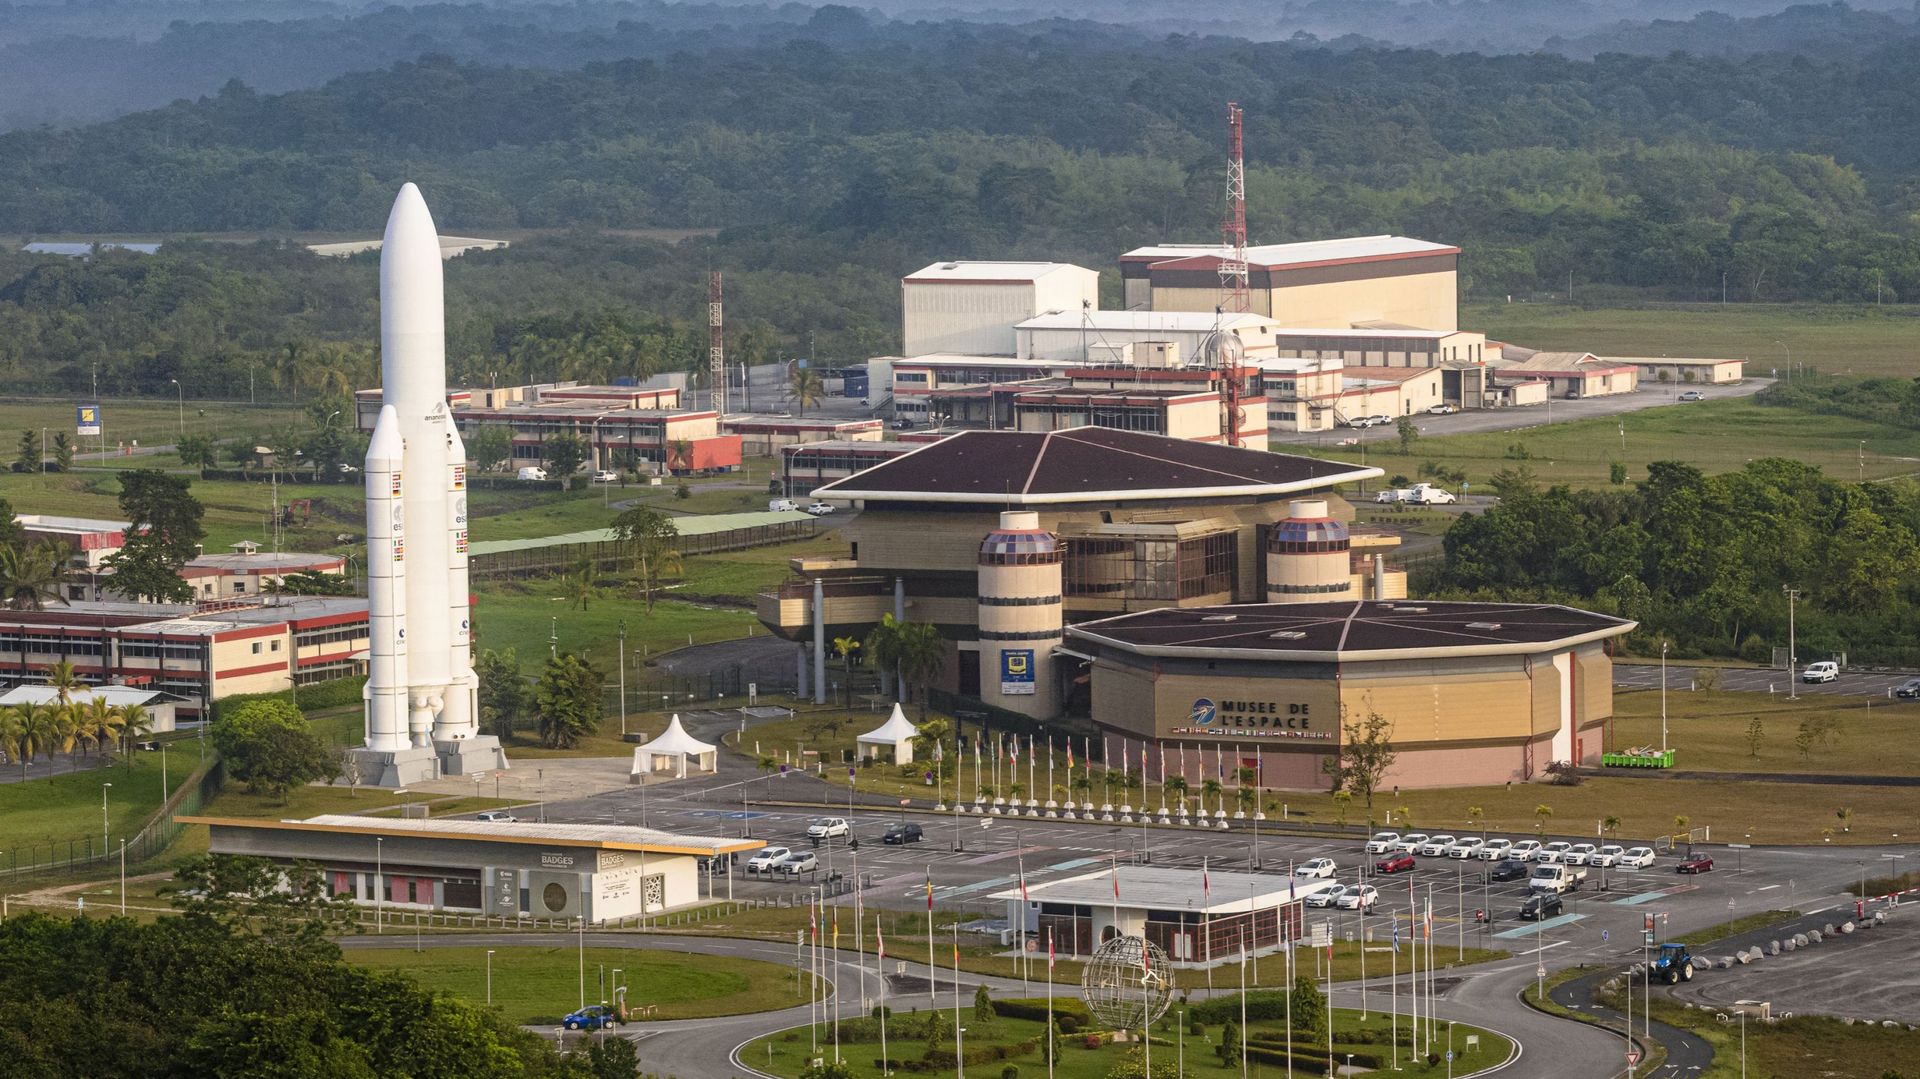 La maquette du lanceur Ariane 5 et du Centre Jupiter au Centre spatial guyanais, à Kourou, en Guyane française.